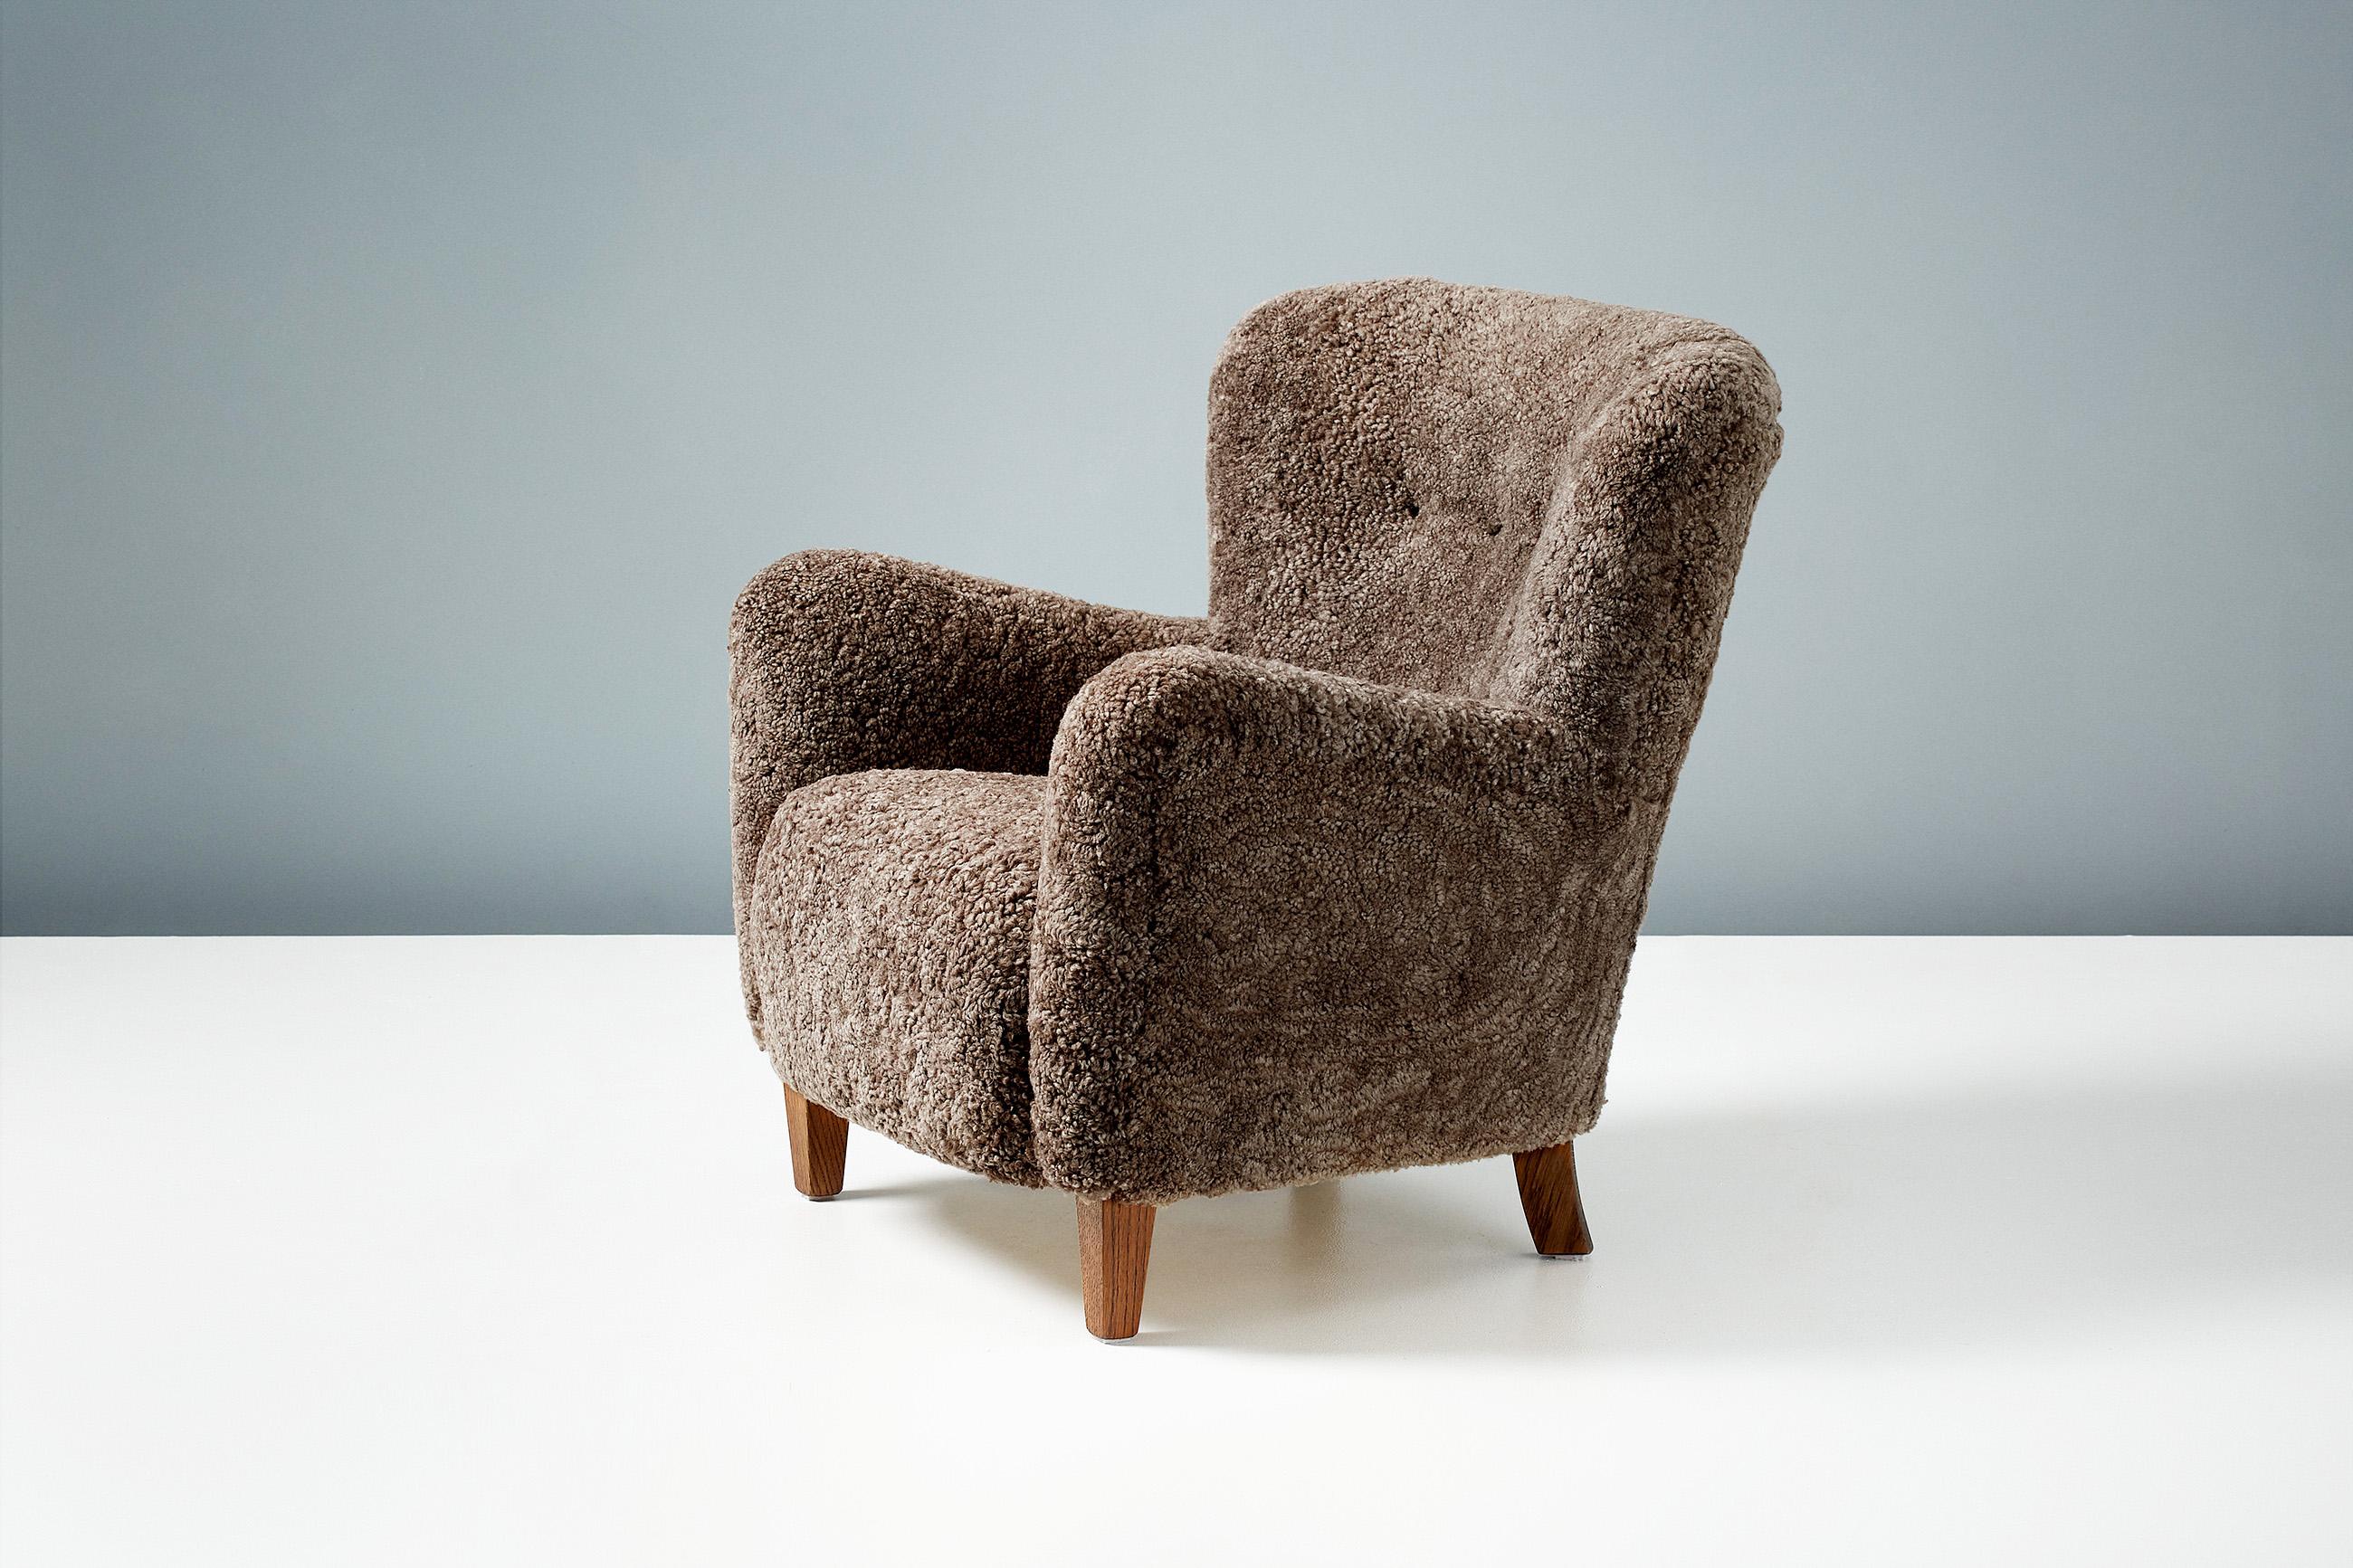 Dagmar Design

Fauteuils RYO

Une paire de chaises longues sur mesure, conçues et produites dans nos ateliers de Londres, avec des matériaux de la plus haute qualité. Ces modèles sont recouverts d'une luxueuse peau de mouton australienne de